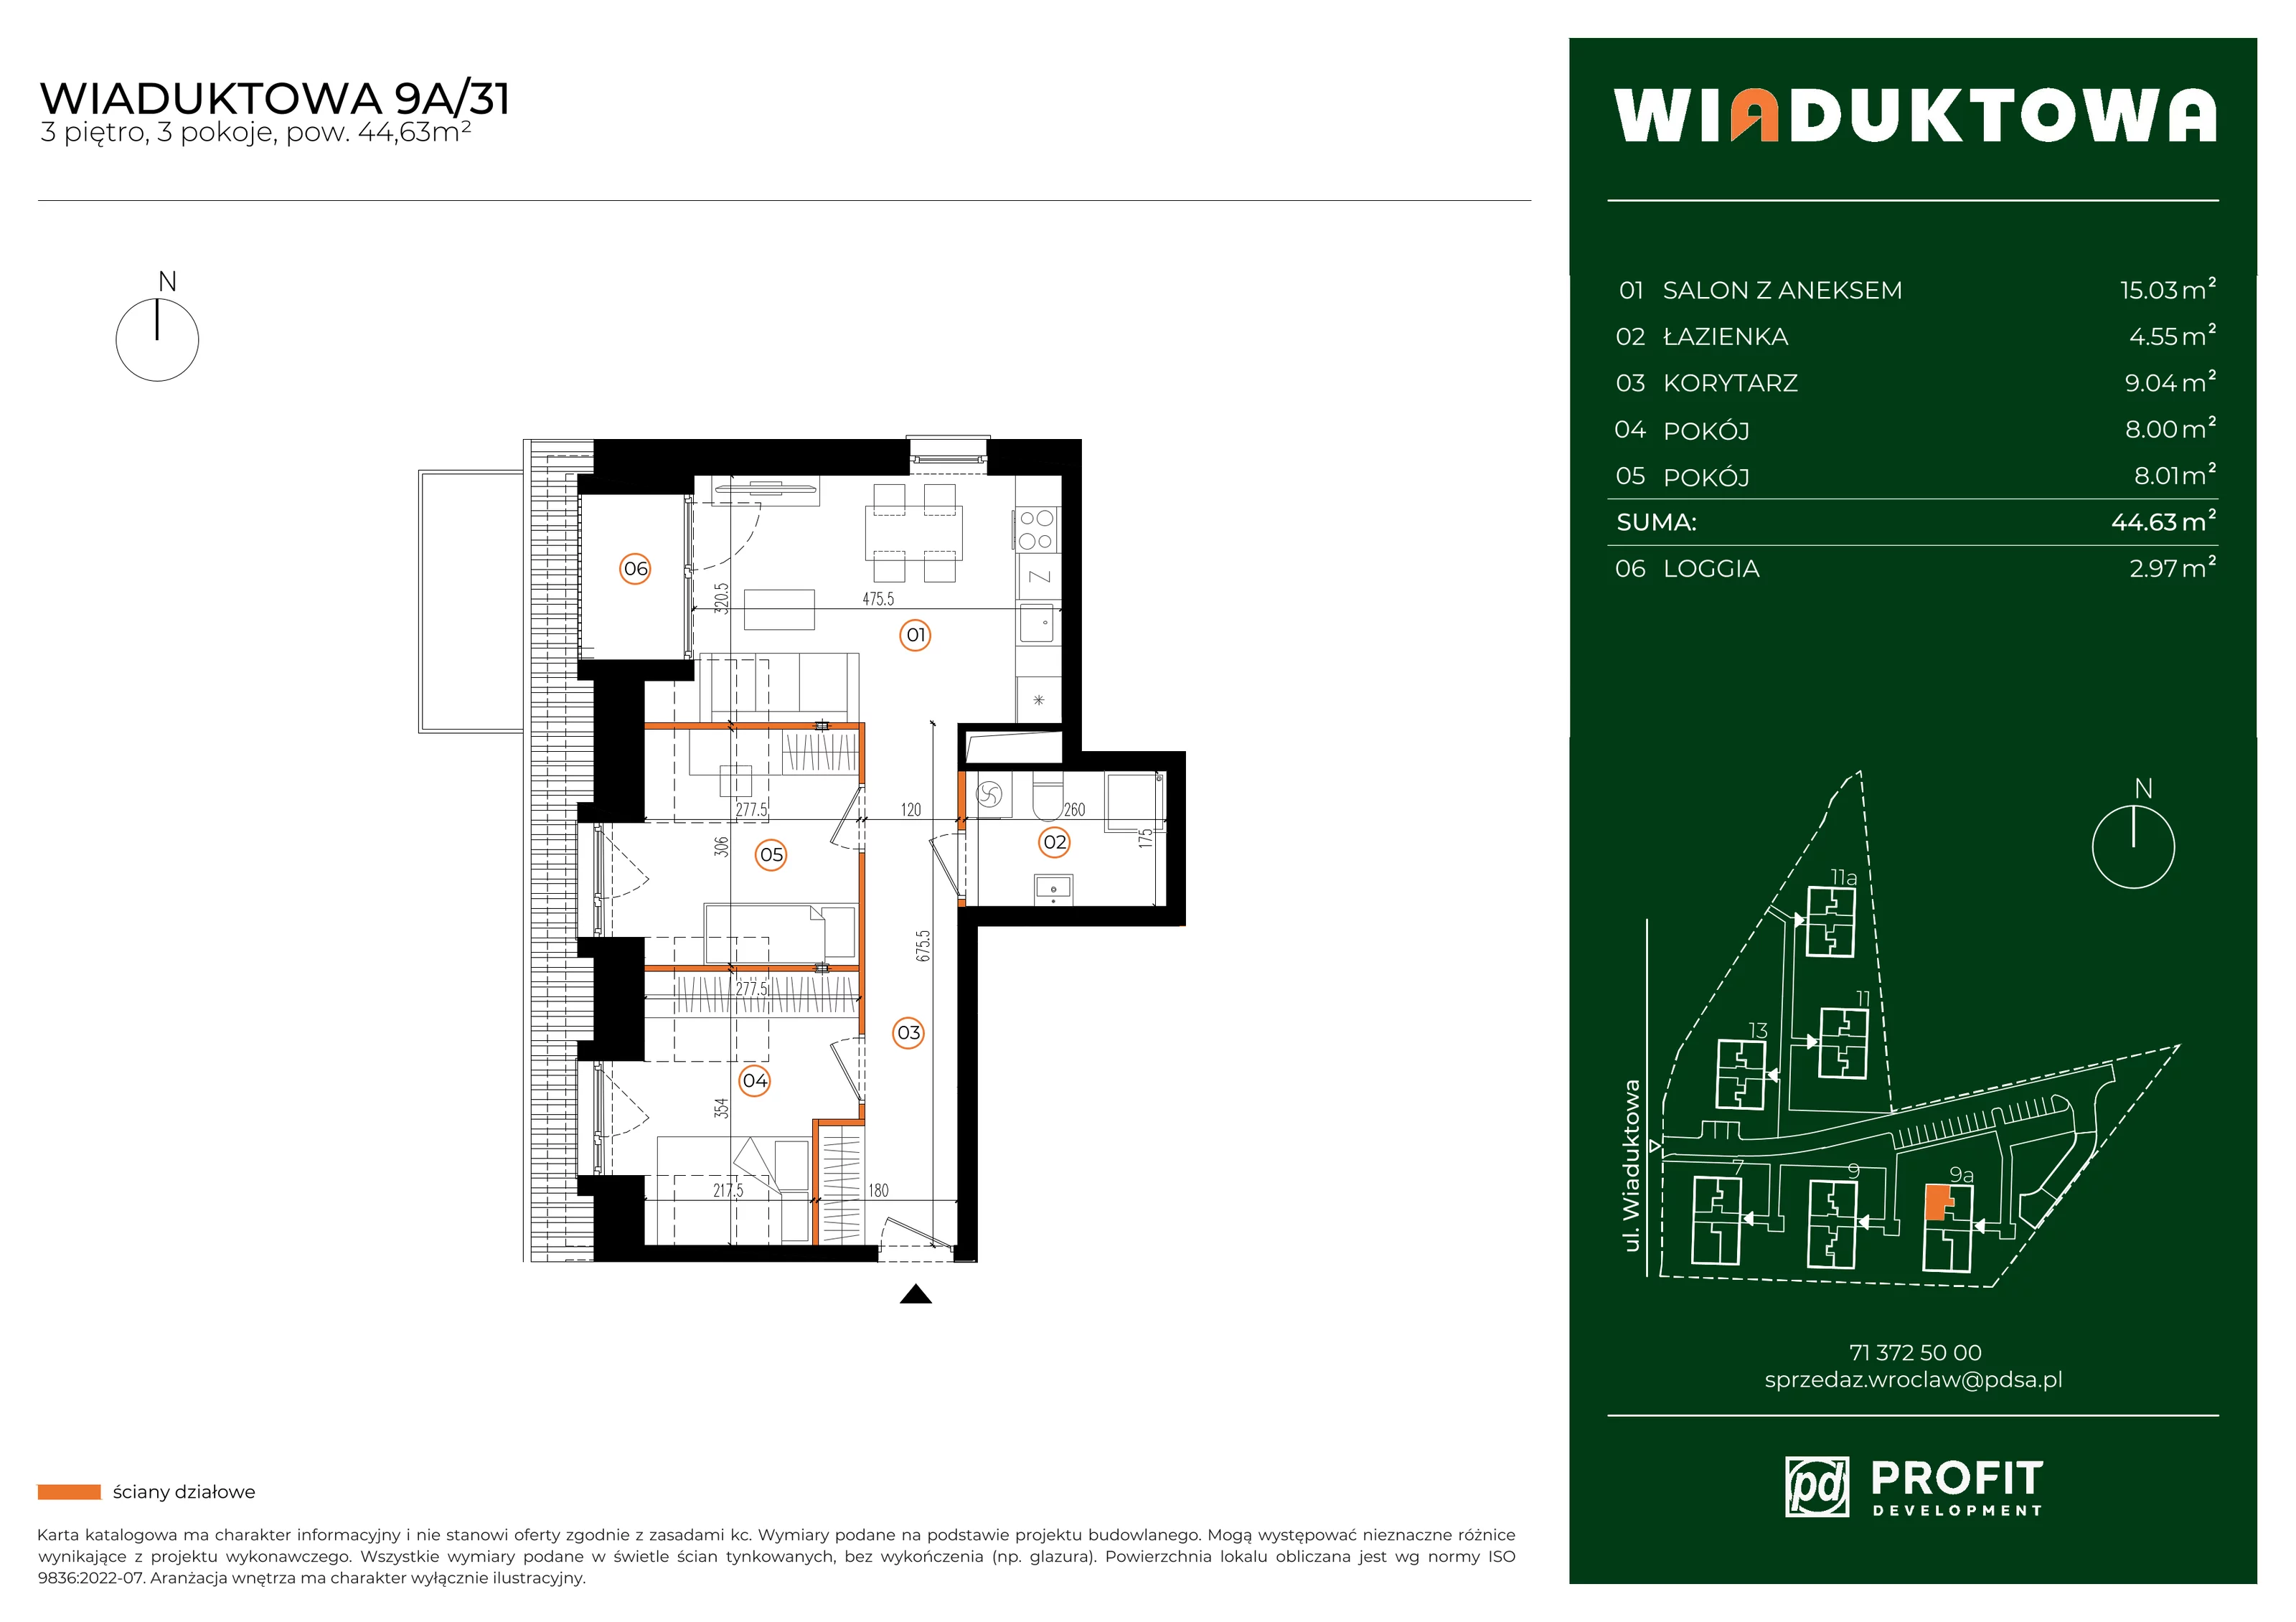 Mieszkanie 44,63 m², piętro 3, oferta nr WI/9A/31, Wiaduktowa, Wrocław, Krzyki-Partynice, Krzyki, ul. Wiaduktowa